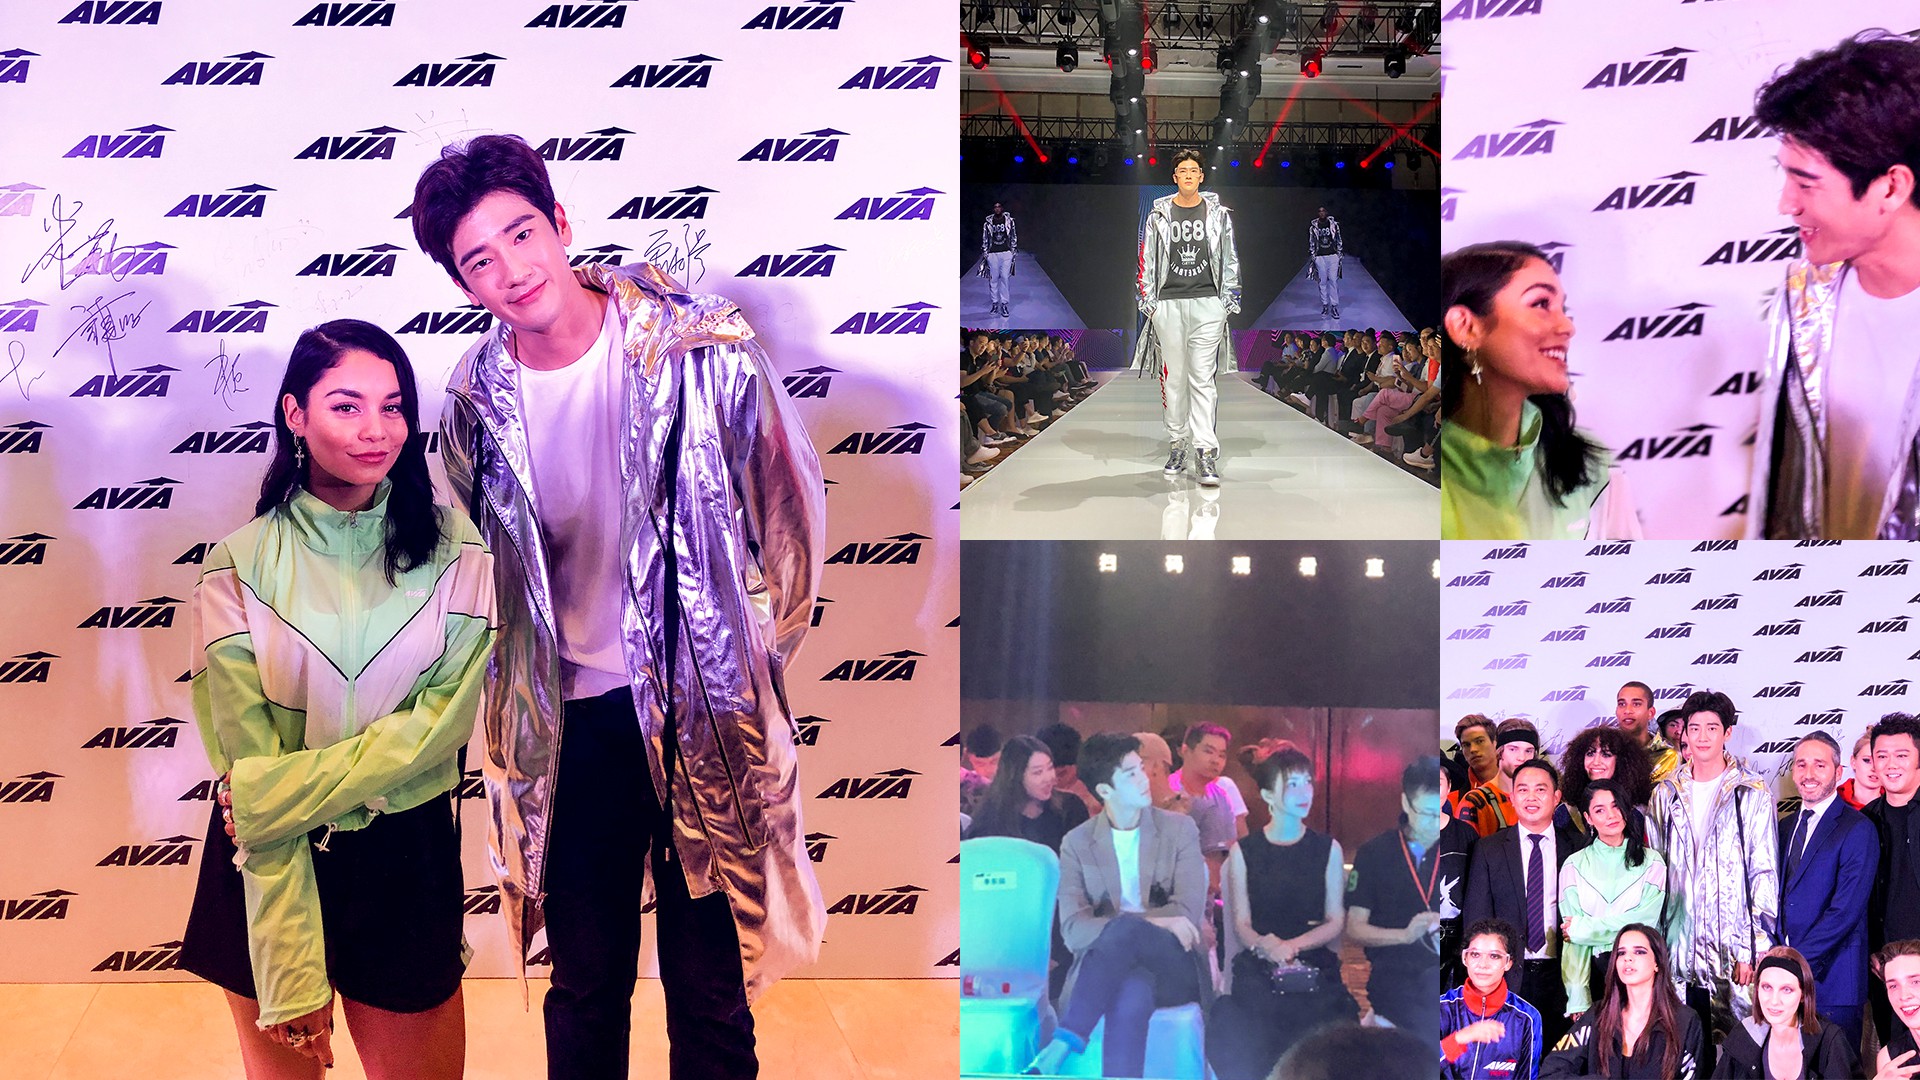 구자성, AVIA 아시아 대표로 바네사 허진스와 패션쇼 장식